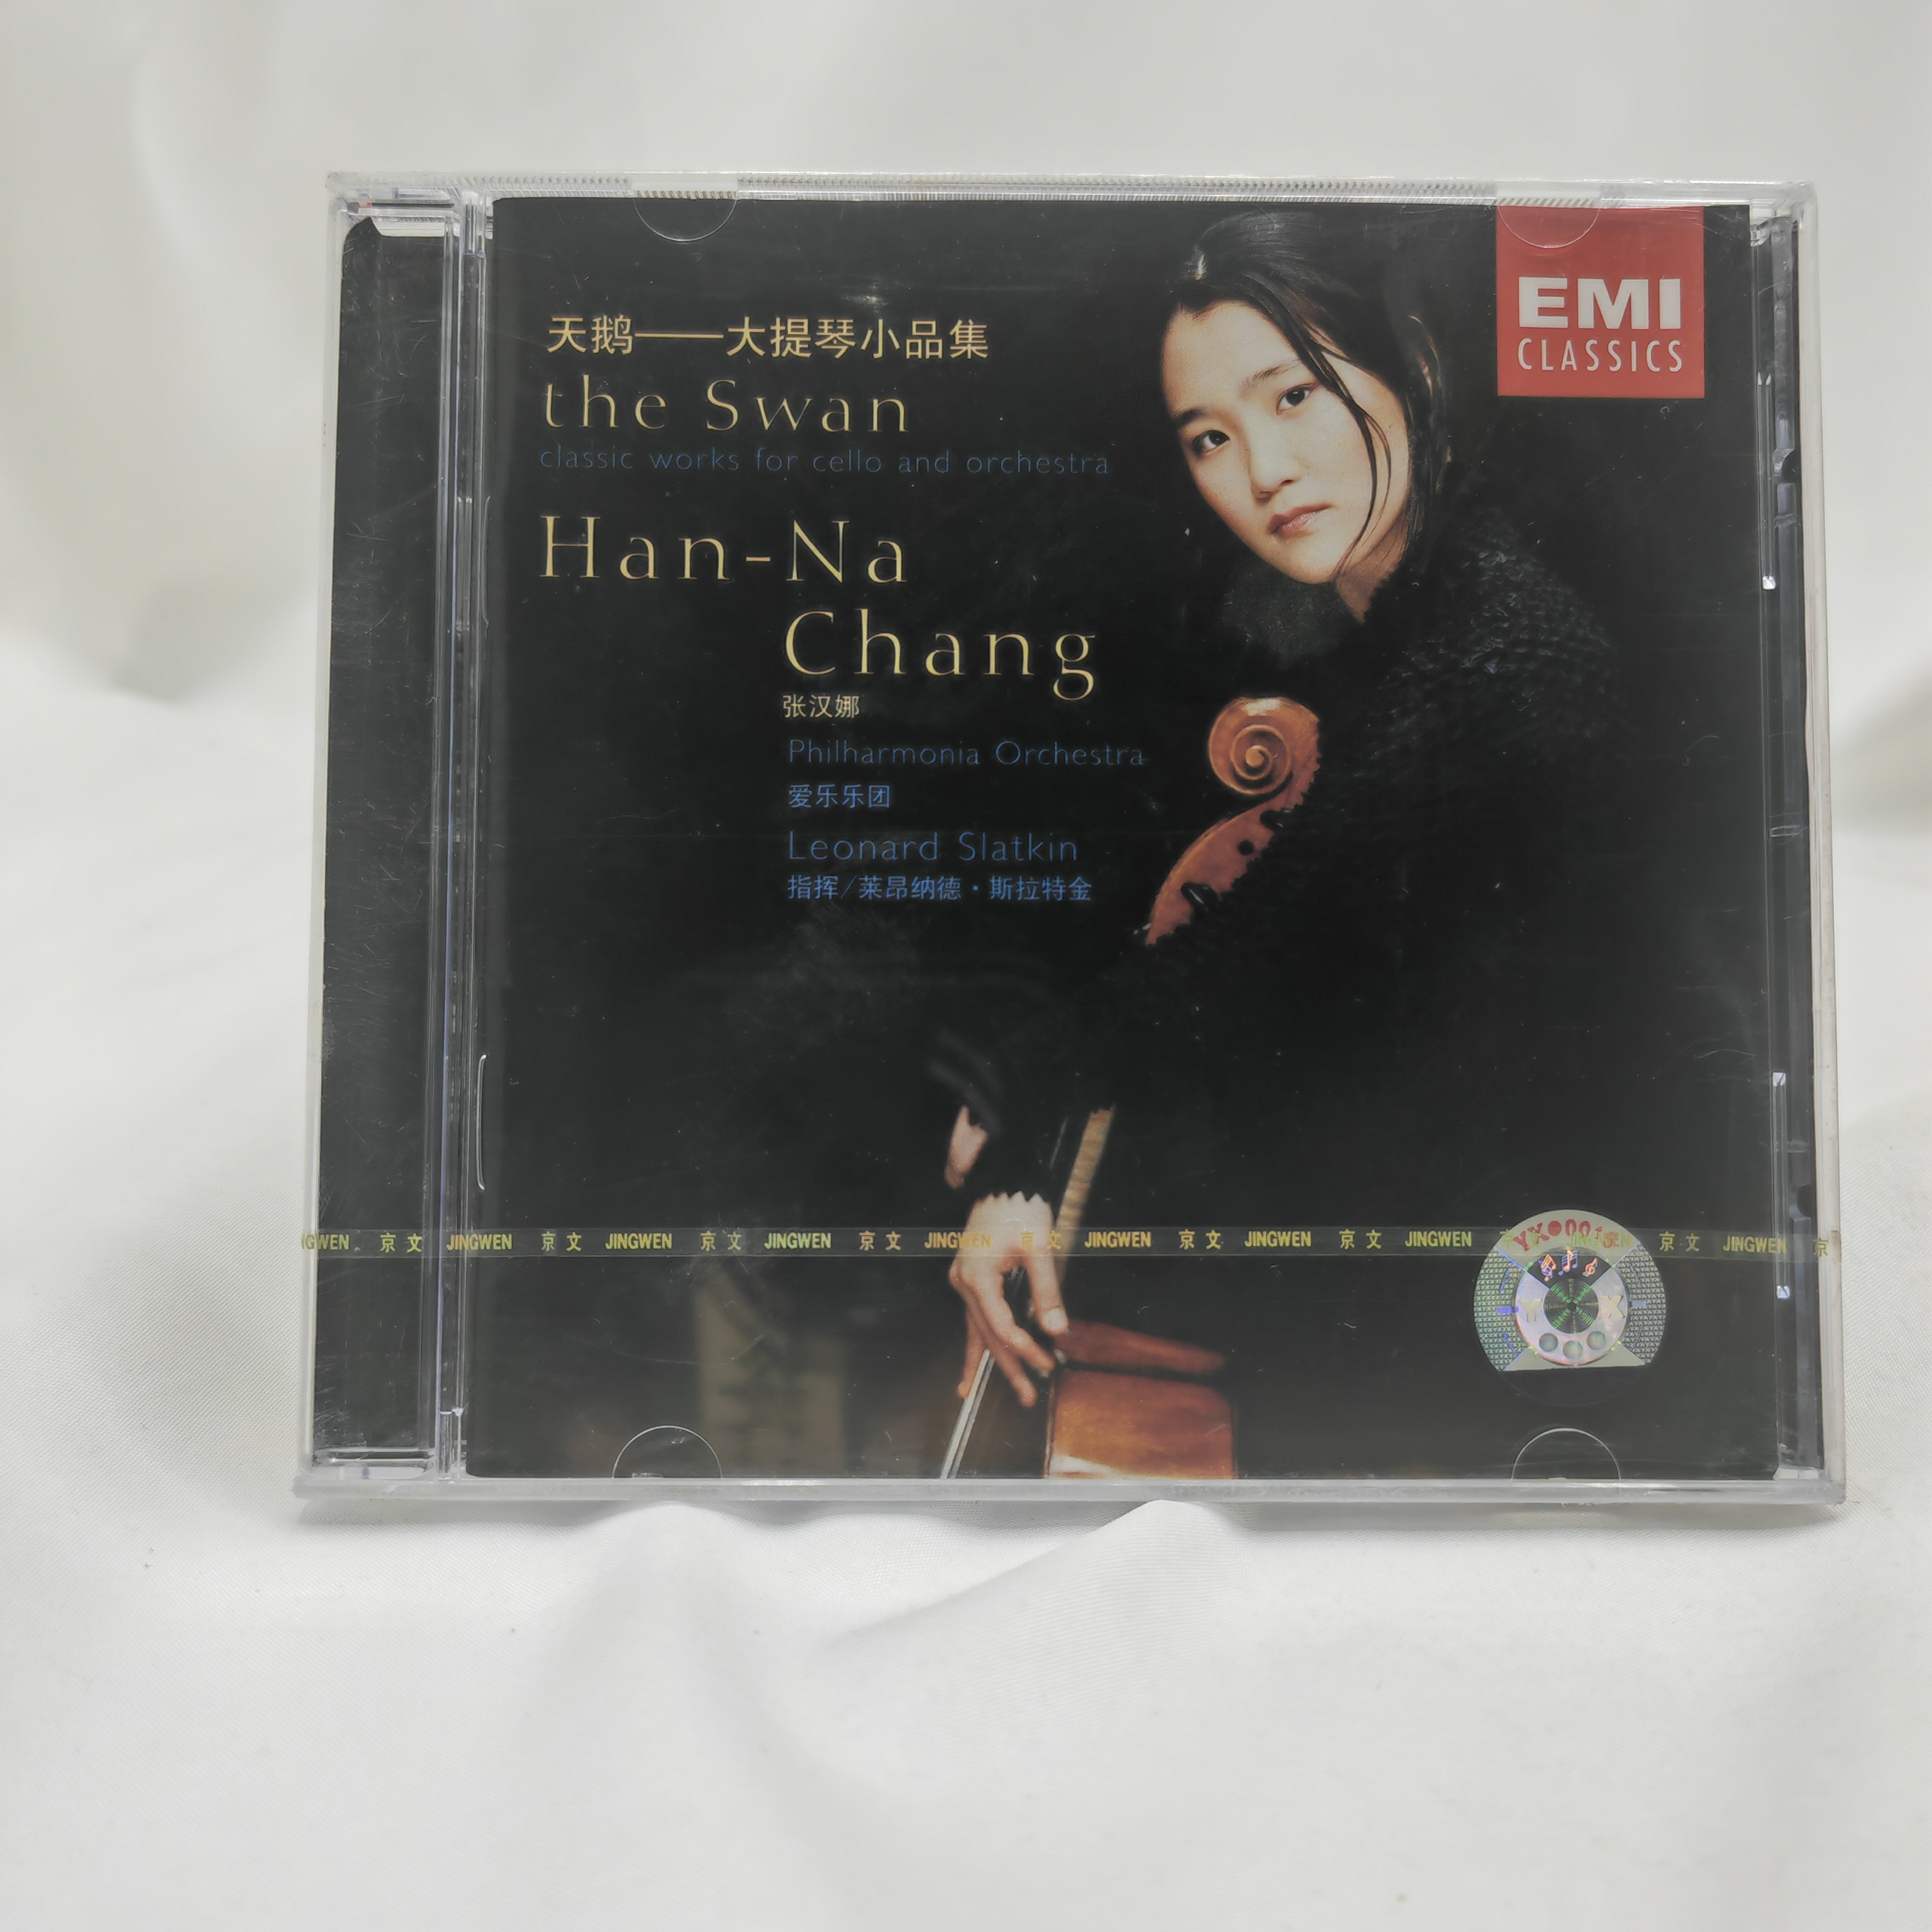 正版 EMI 引进 天鹅--大提琴小品集 张汉娜 爱乐乐团 CD